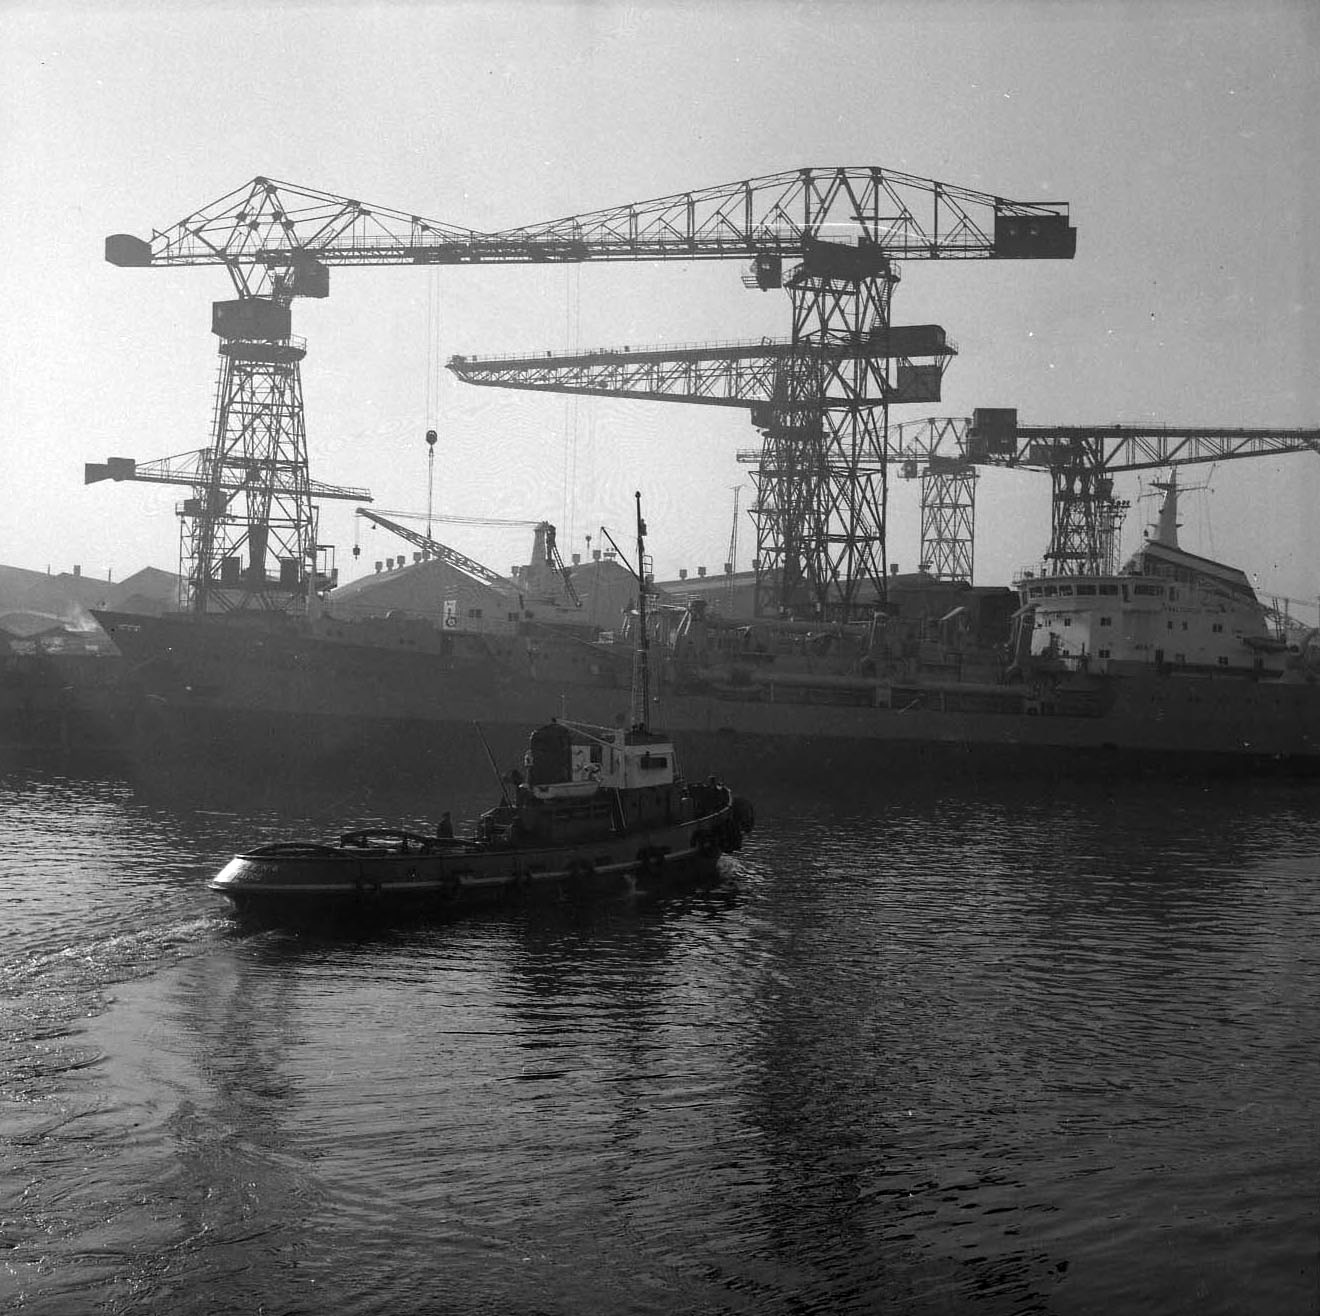 Les chantiers navals sur l'île de Nantes dans les années 1960.